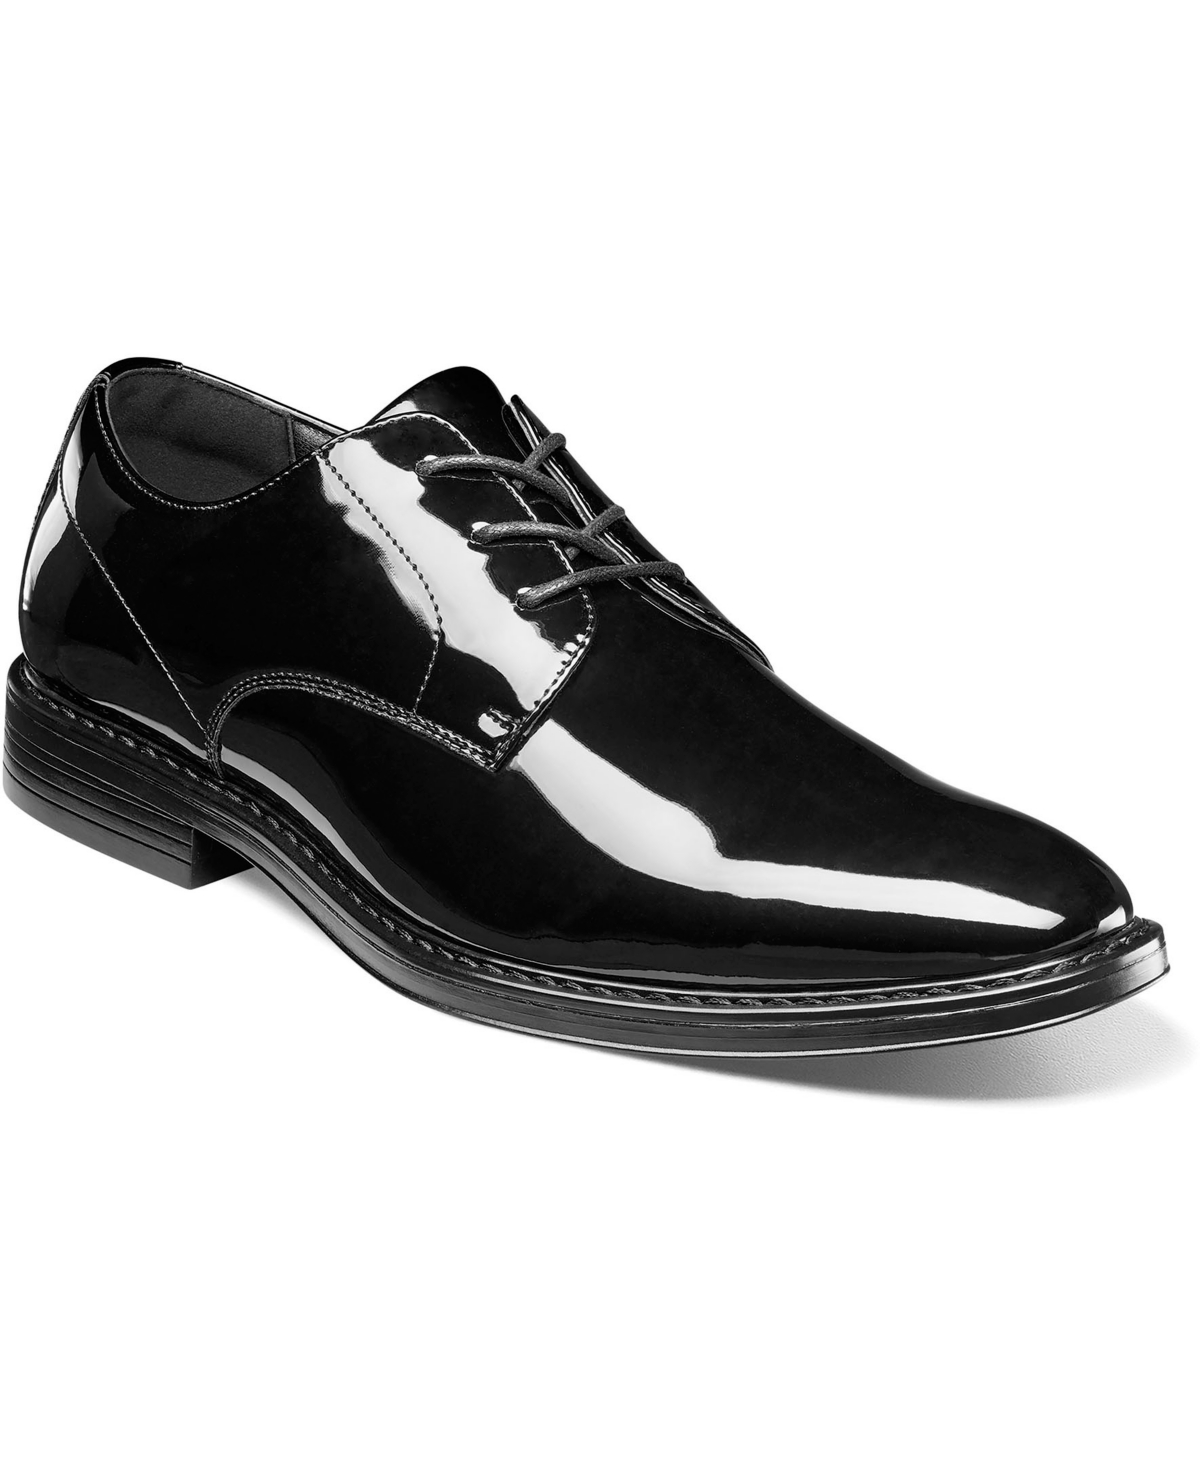 Men's Centro Formal Flex Plain Toe Oxford Shoes - Black Patent